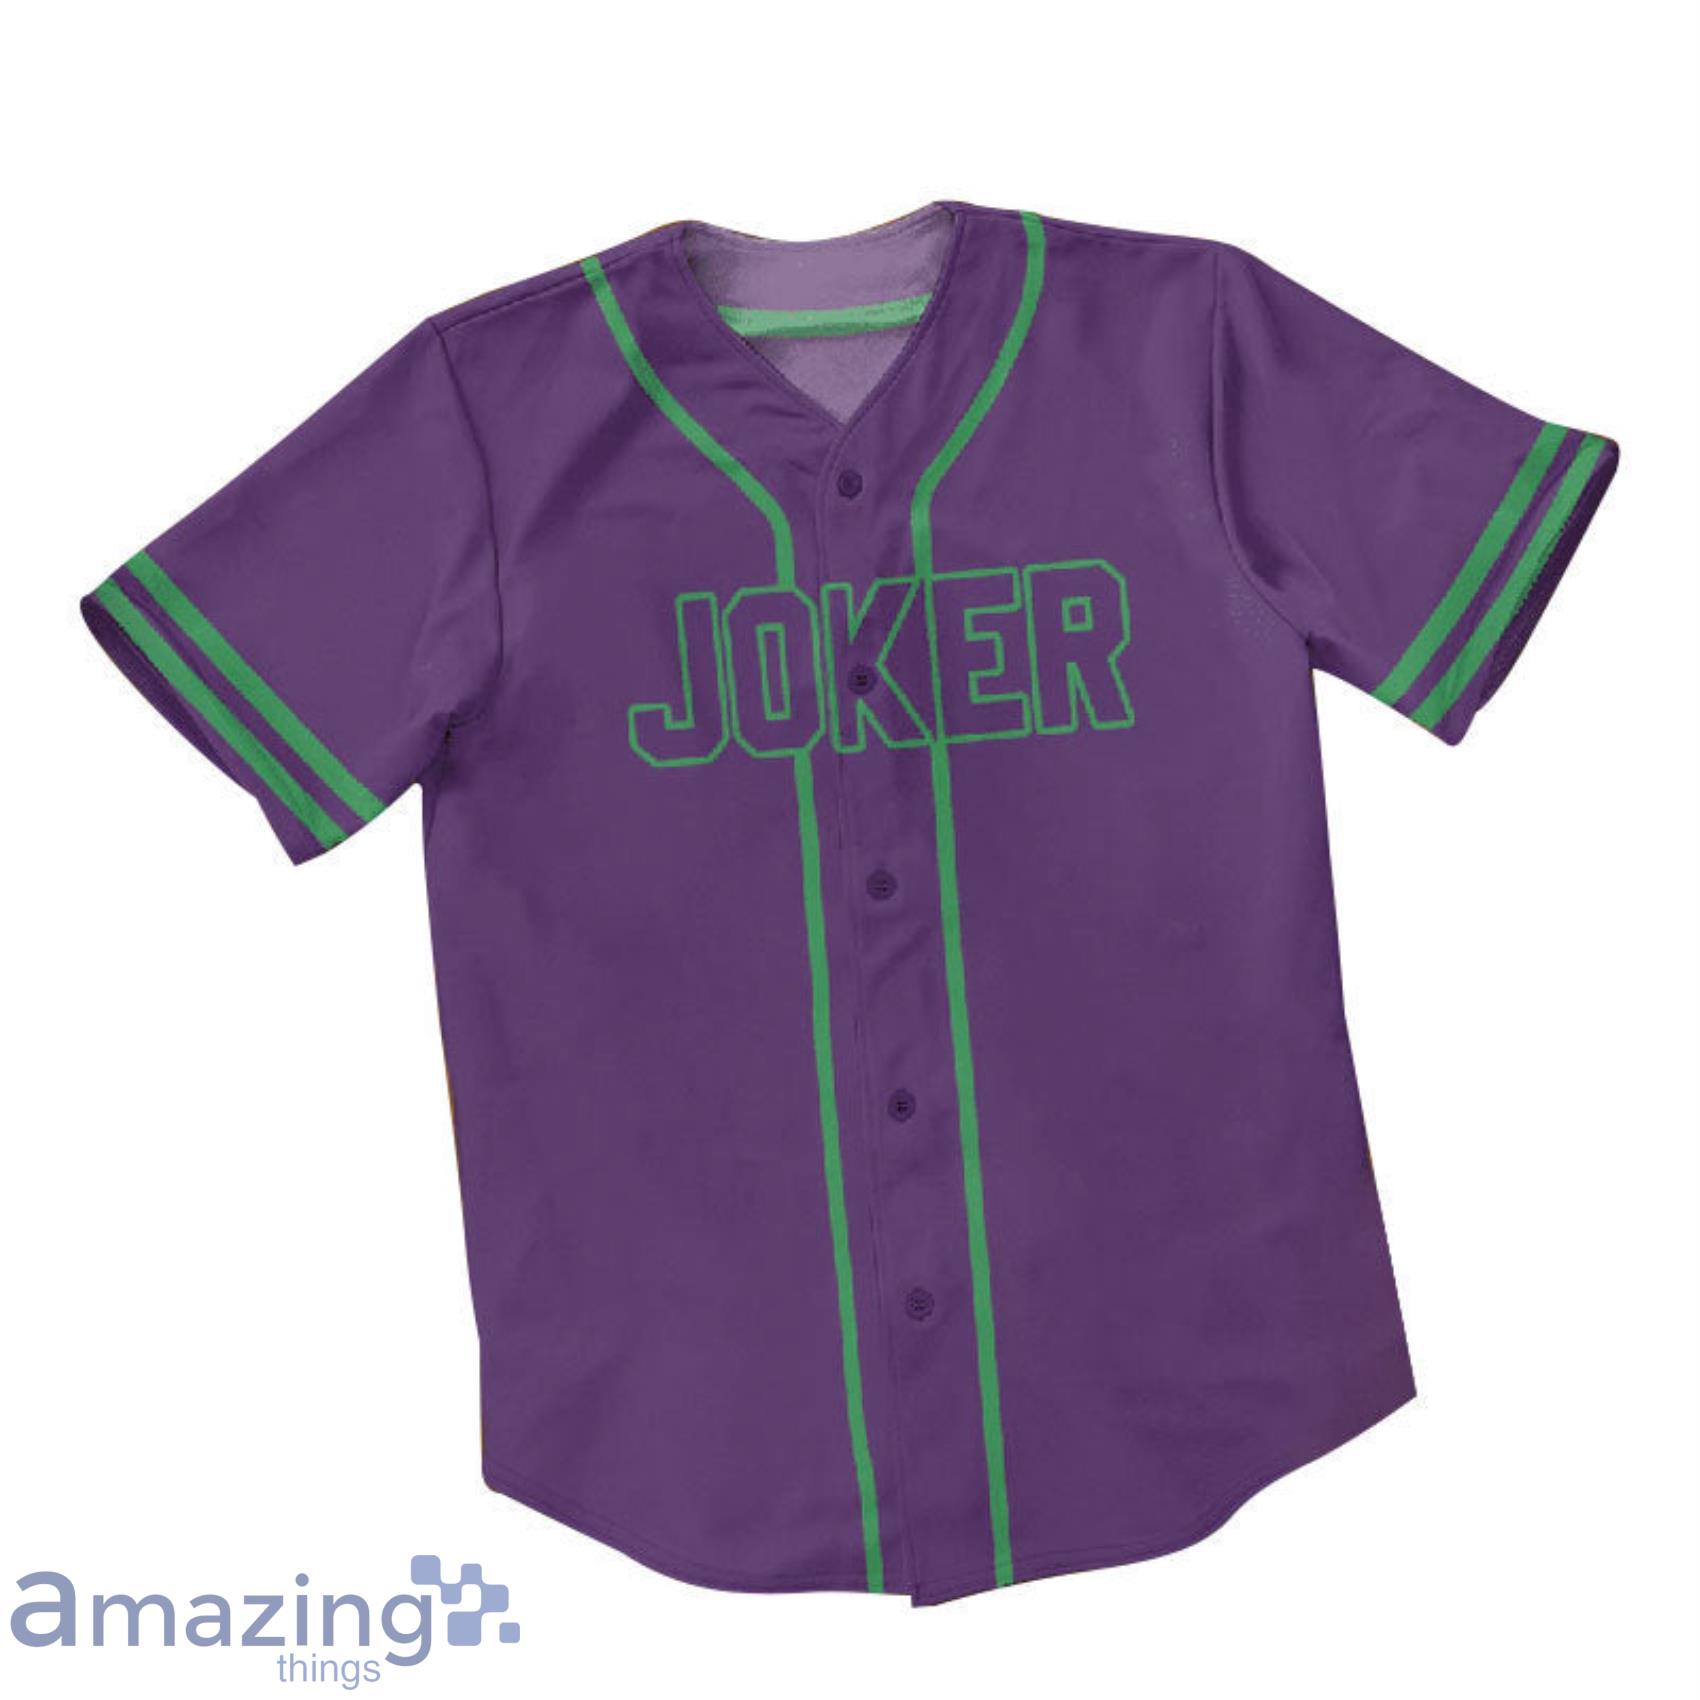 Joker Purple AOP Full Print Baseball Jersey Shirt